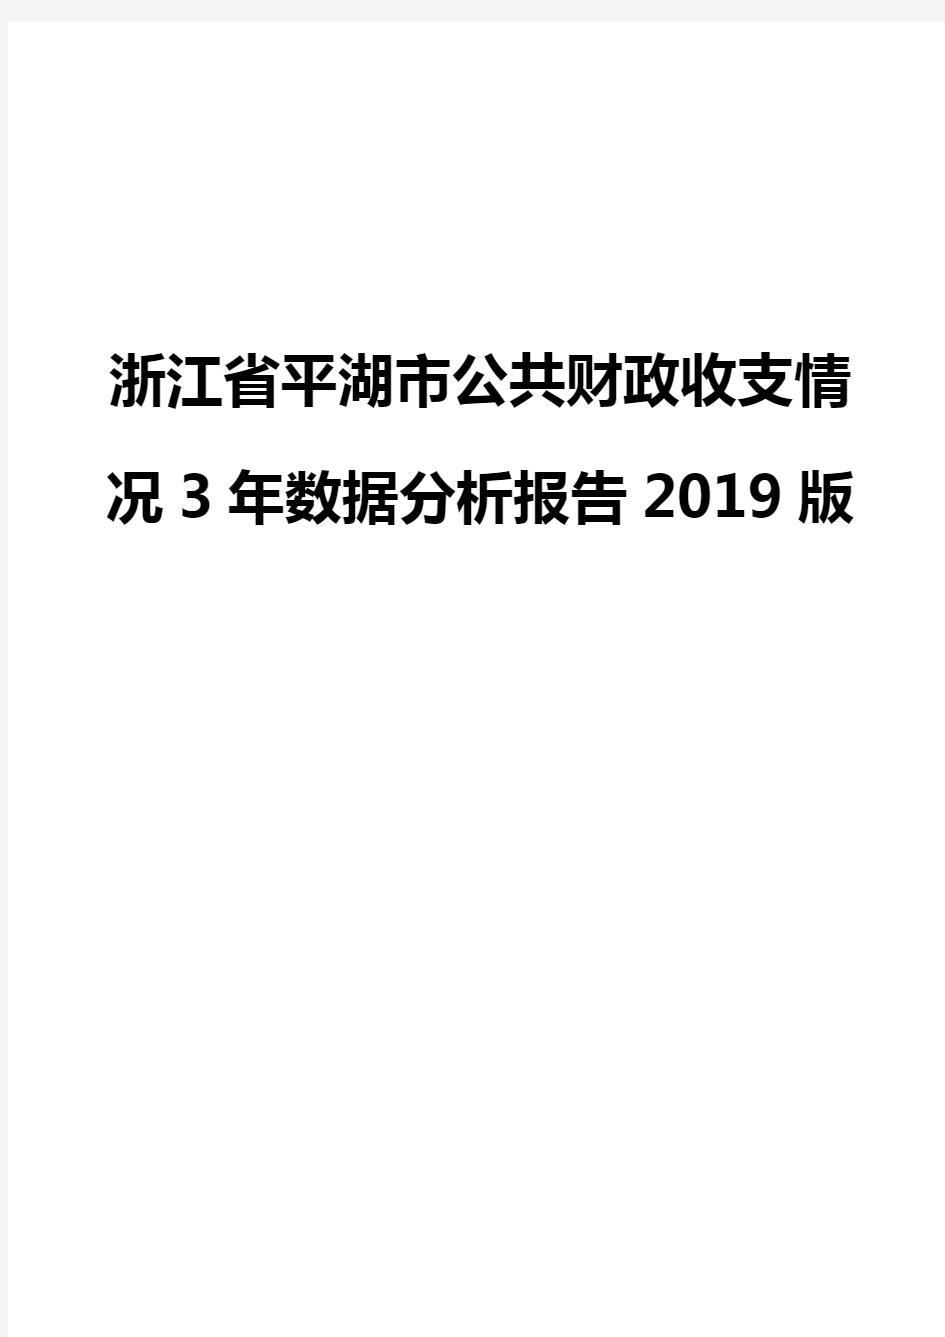 浙江省平湖市公共财政收支情况3年数据分析报告2019版